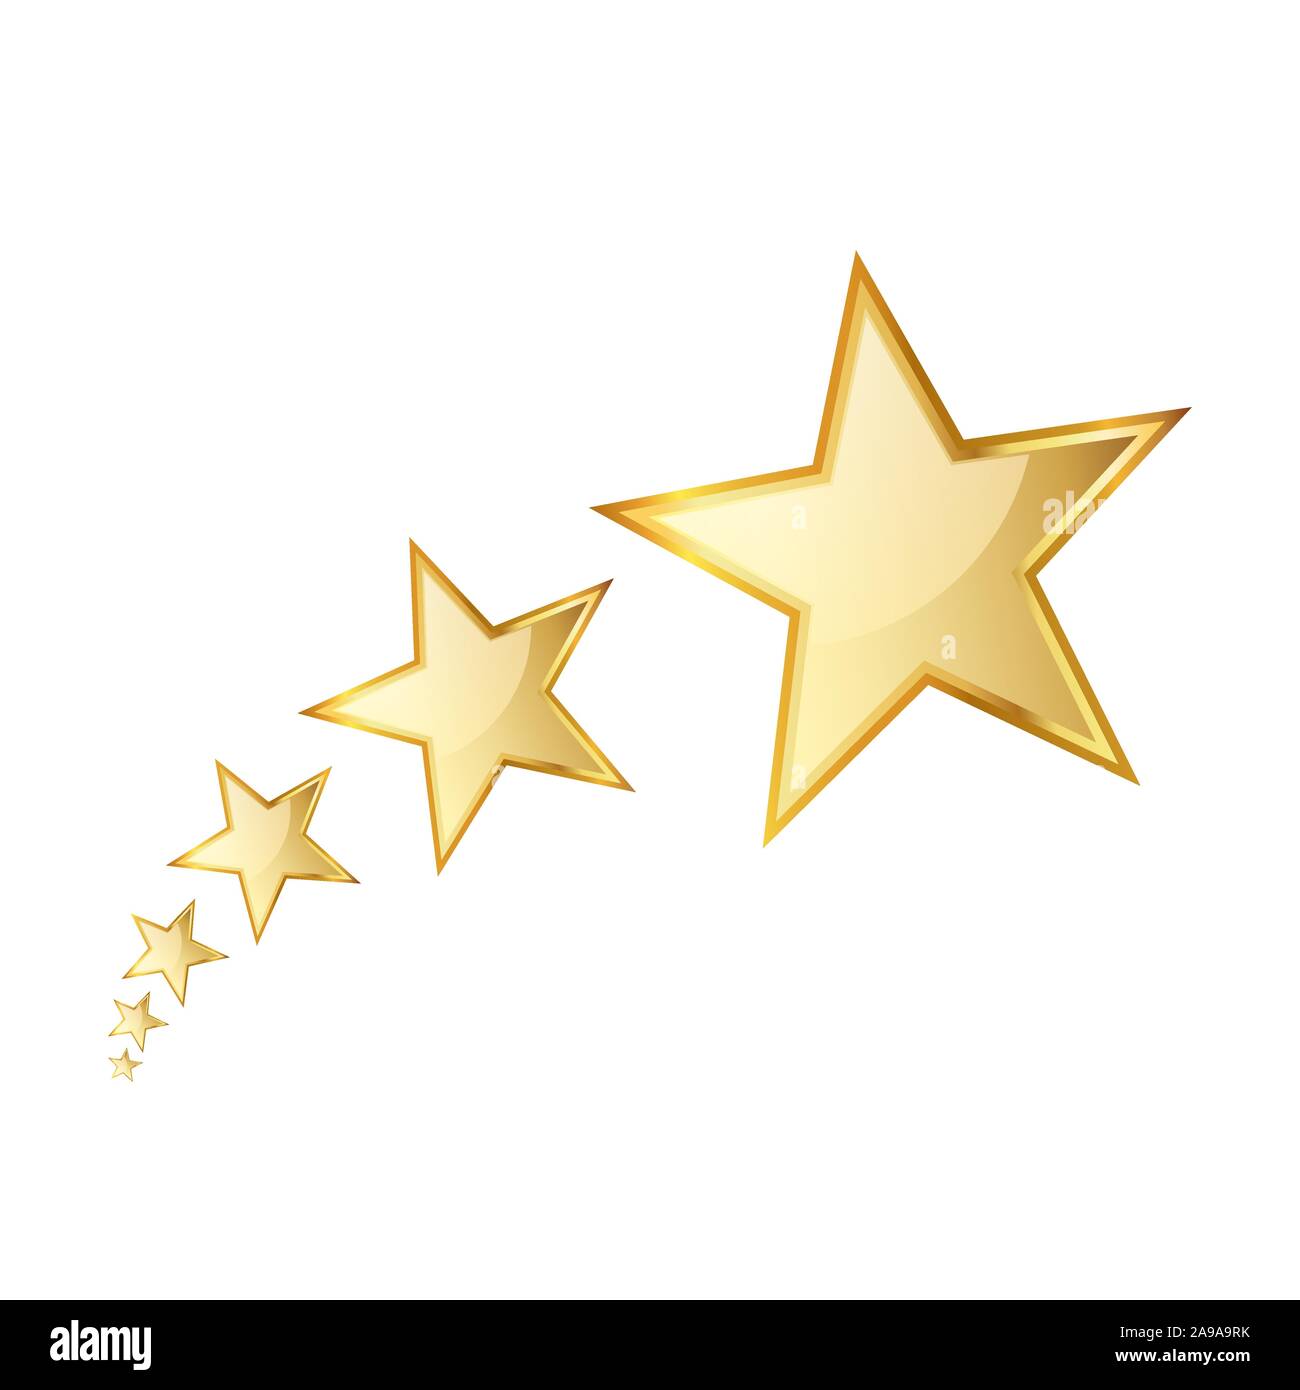 Golden Star des icônes. Vector illustration. Plusieurs étoiles d'or sur fond blanc. Illustration de Vecteur